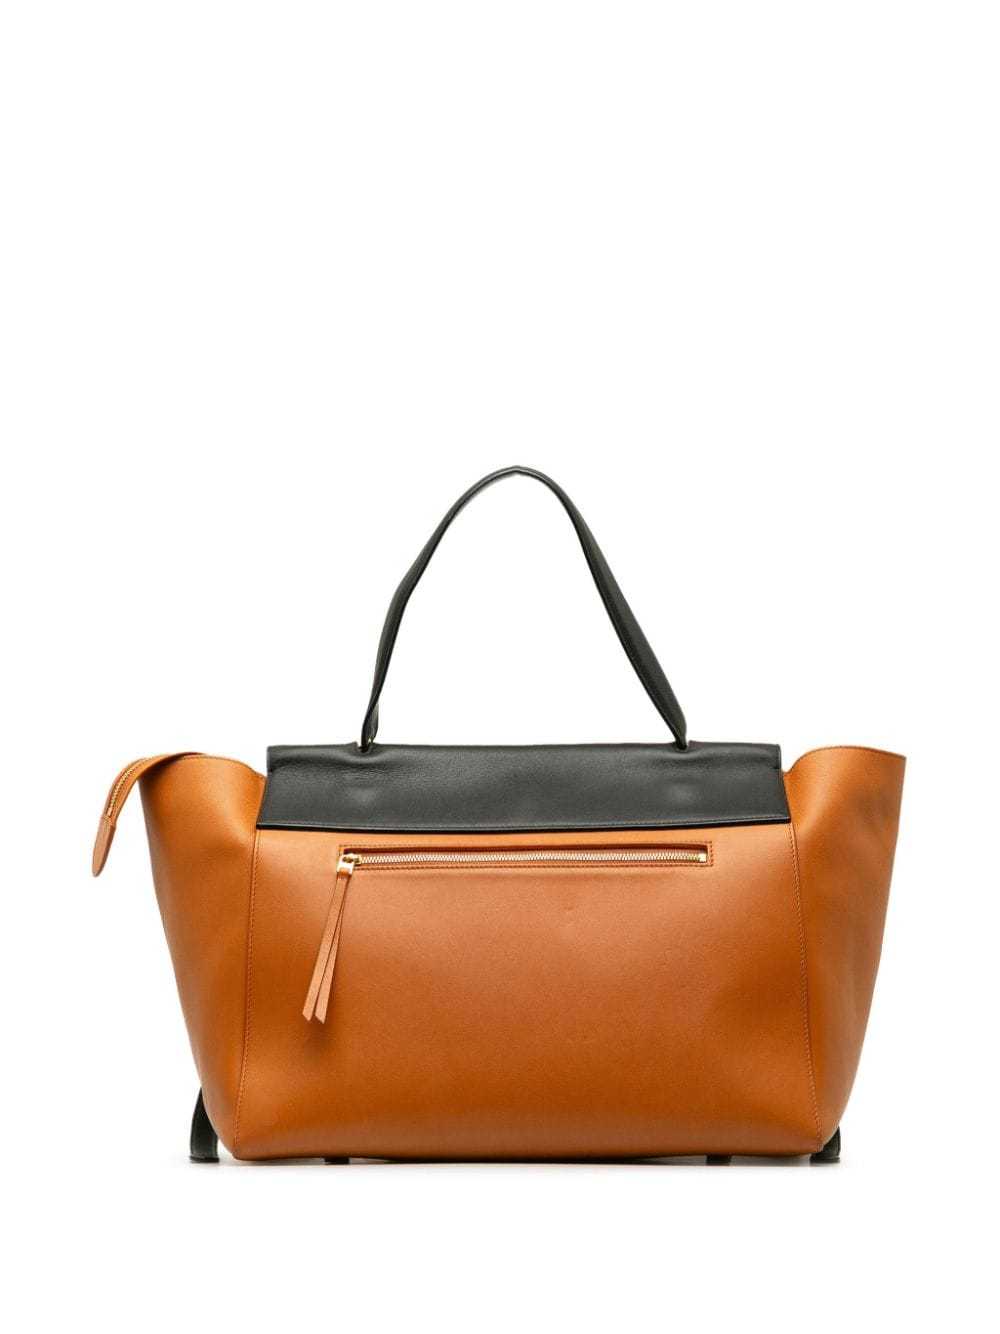 Pre-owned Celine 2014 Mini Bicolor Handbag In Black